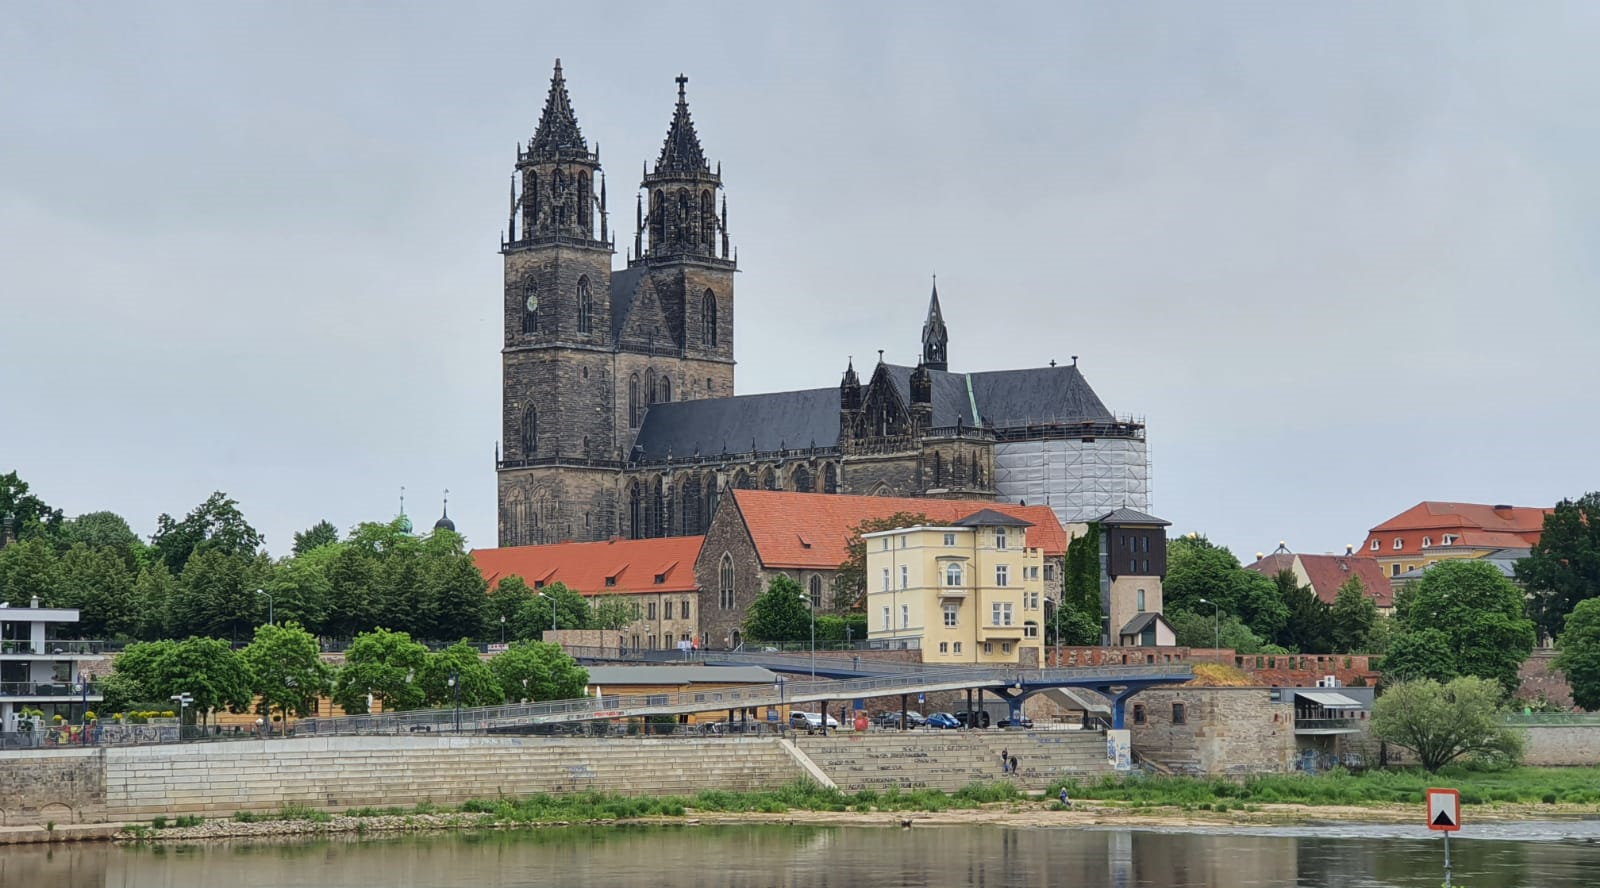 Sechs neue Corona-Infektionen in Sachsen-Anhalt gemeldet - vier davon in Magdeburg